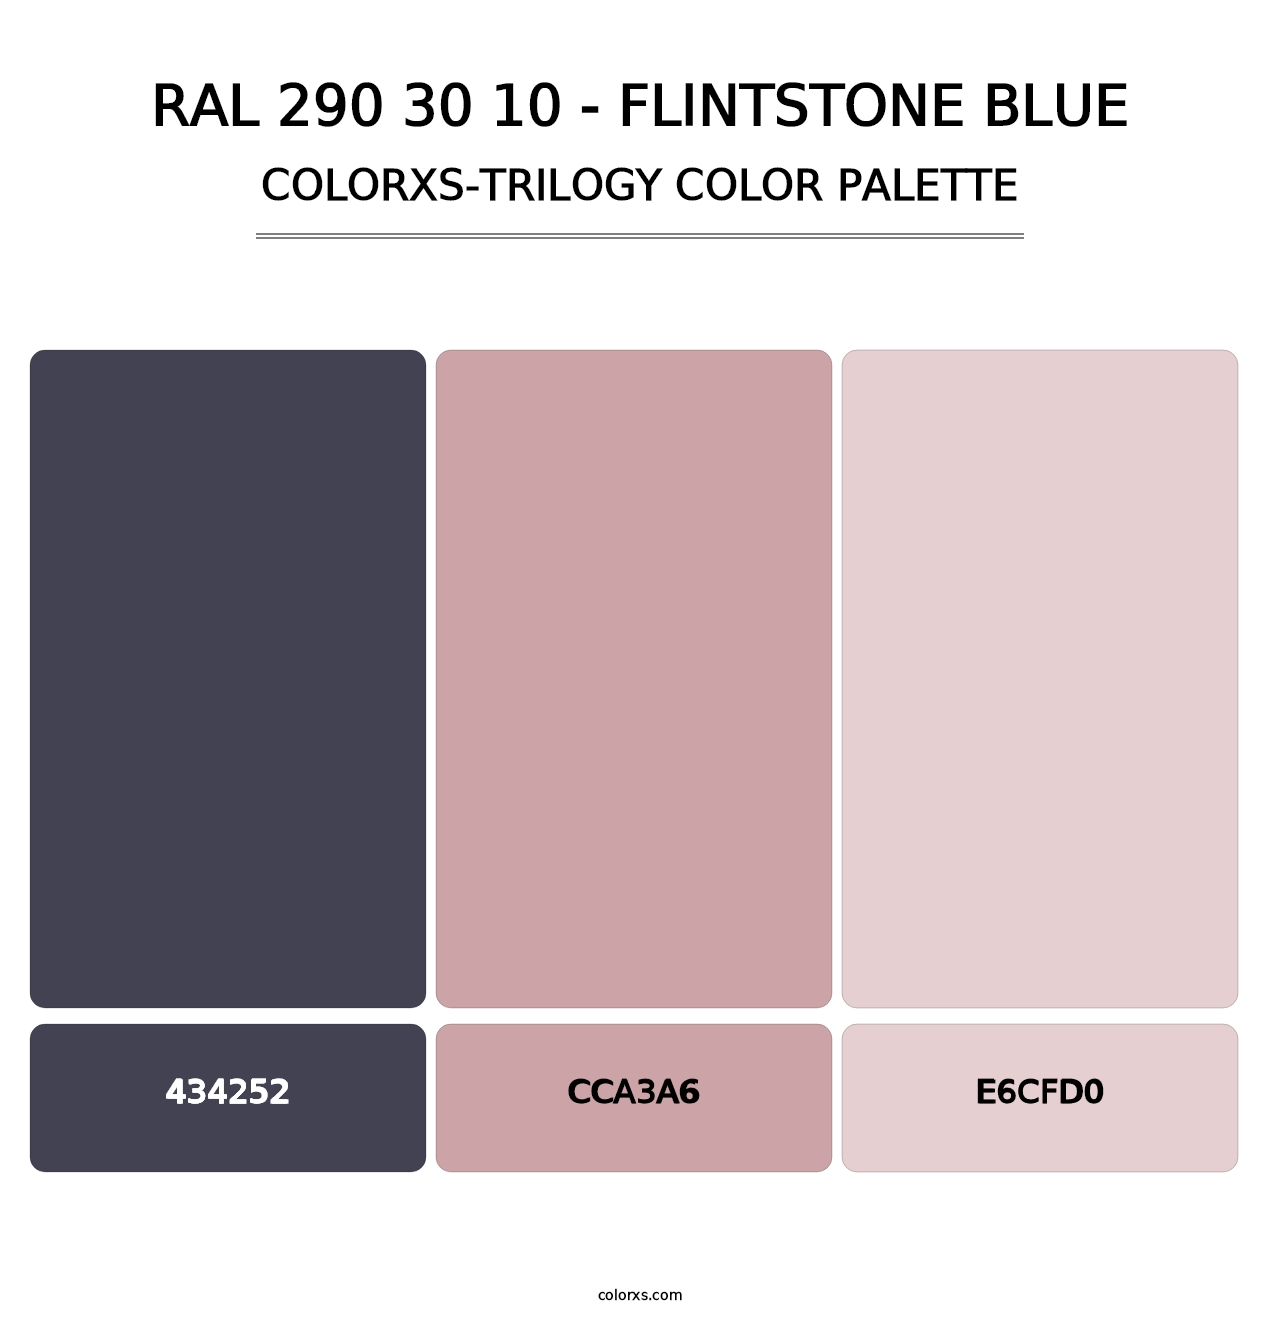 RAL 290 30 10 - Flintstone Blue - Colorxs Trilogy Palette